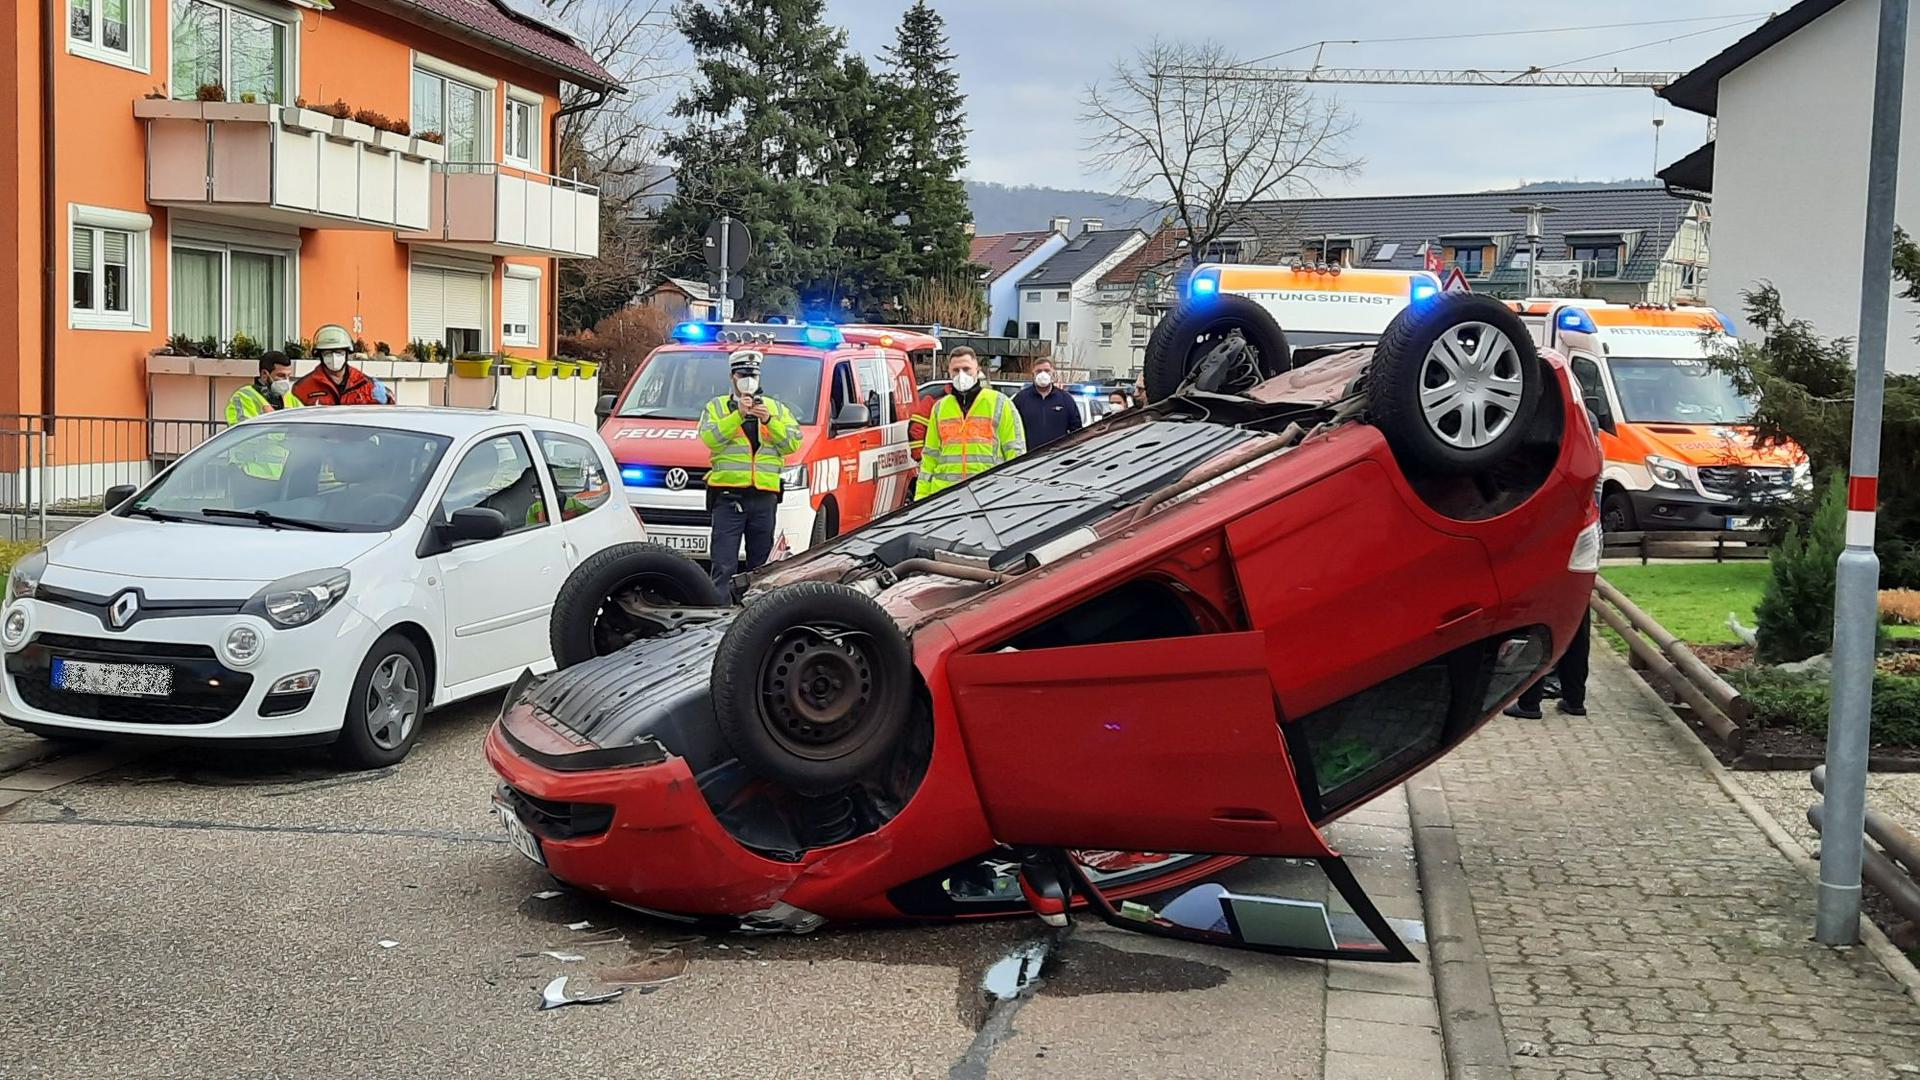 Glück im Unglück: Bei einem spektakulären Unfall in der Bruchhausener Rathausstraße ist ein 94-jähriger Mann mit seinem Wagen gegen ein geparktes Auto gestoßen. In der Folge kippte der Wagen aufs Dach, der Mann wurde aber nur leicht verletzt